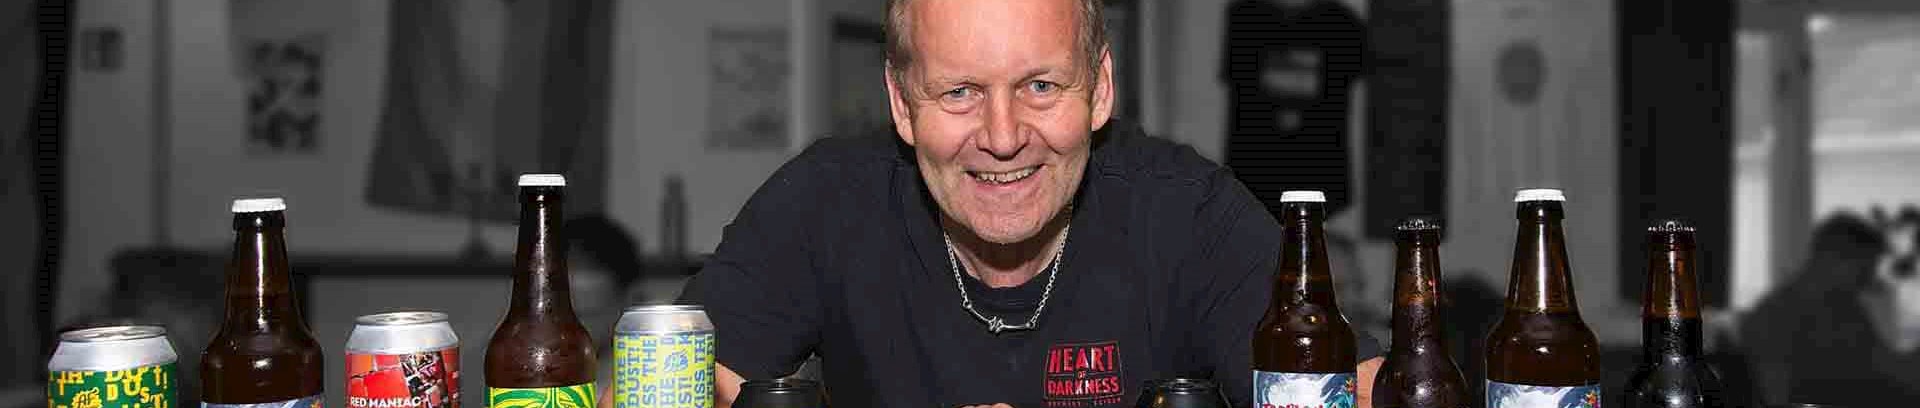 Torben Mathews, ølentusiast og foredragsholder ved FOF Aarhus.